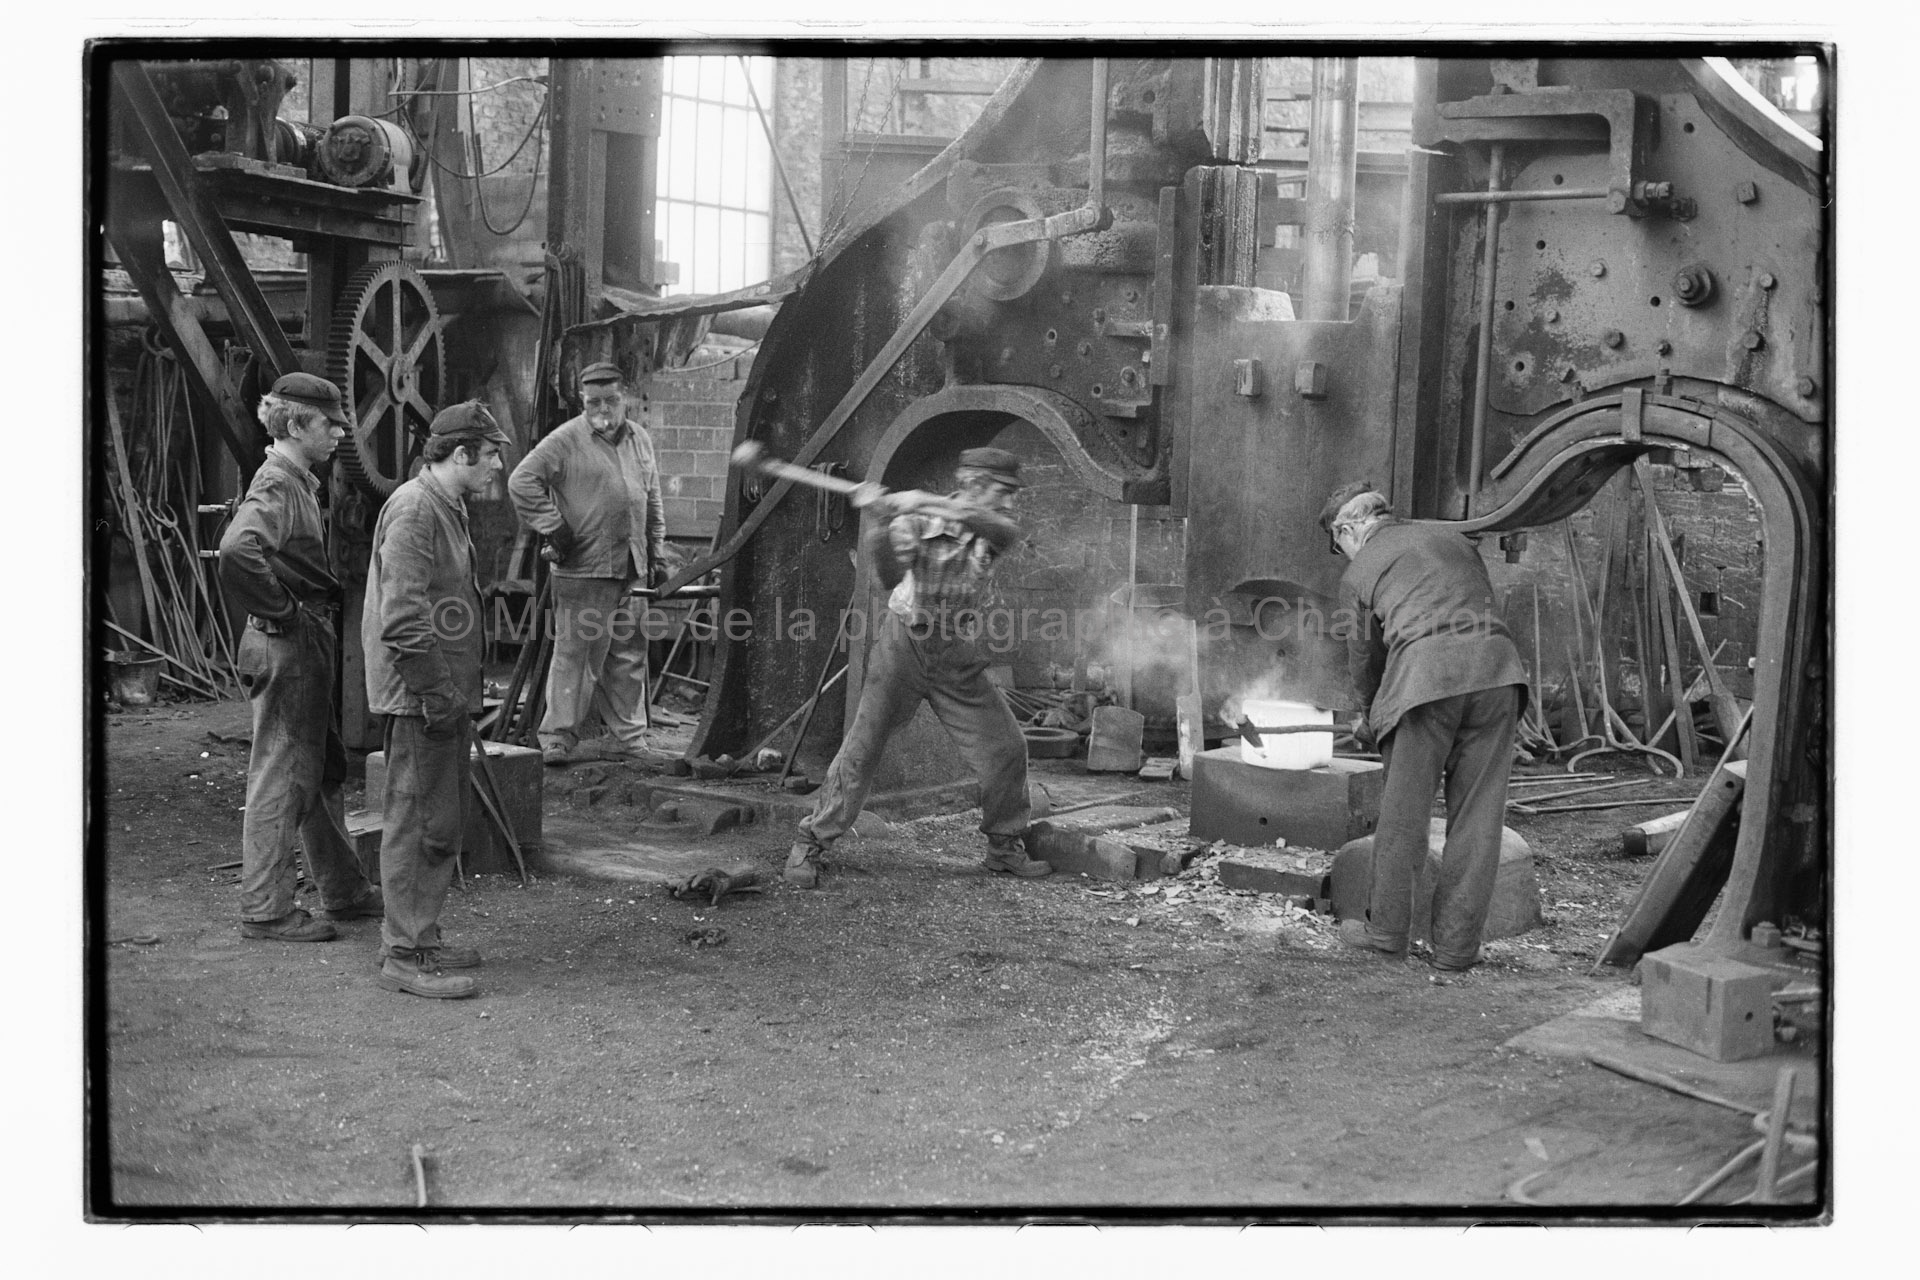 Ouvriers travaillant sur l'affinage d'une pièce métallique